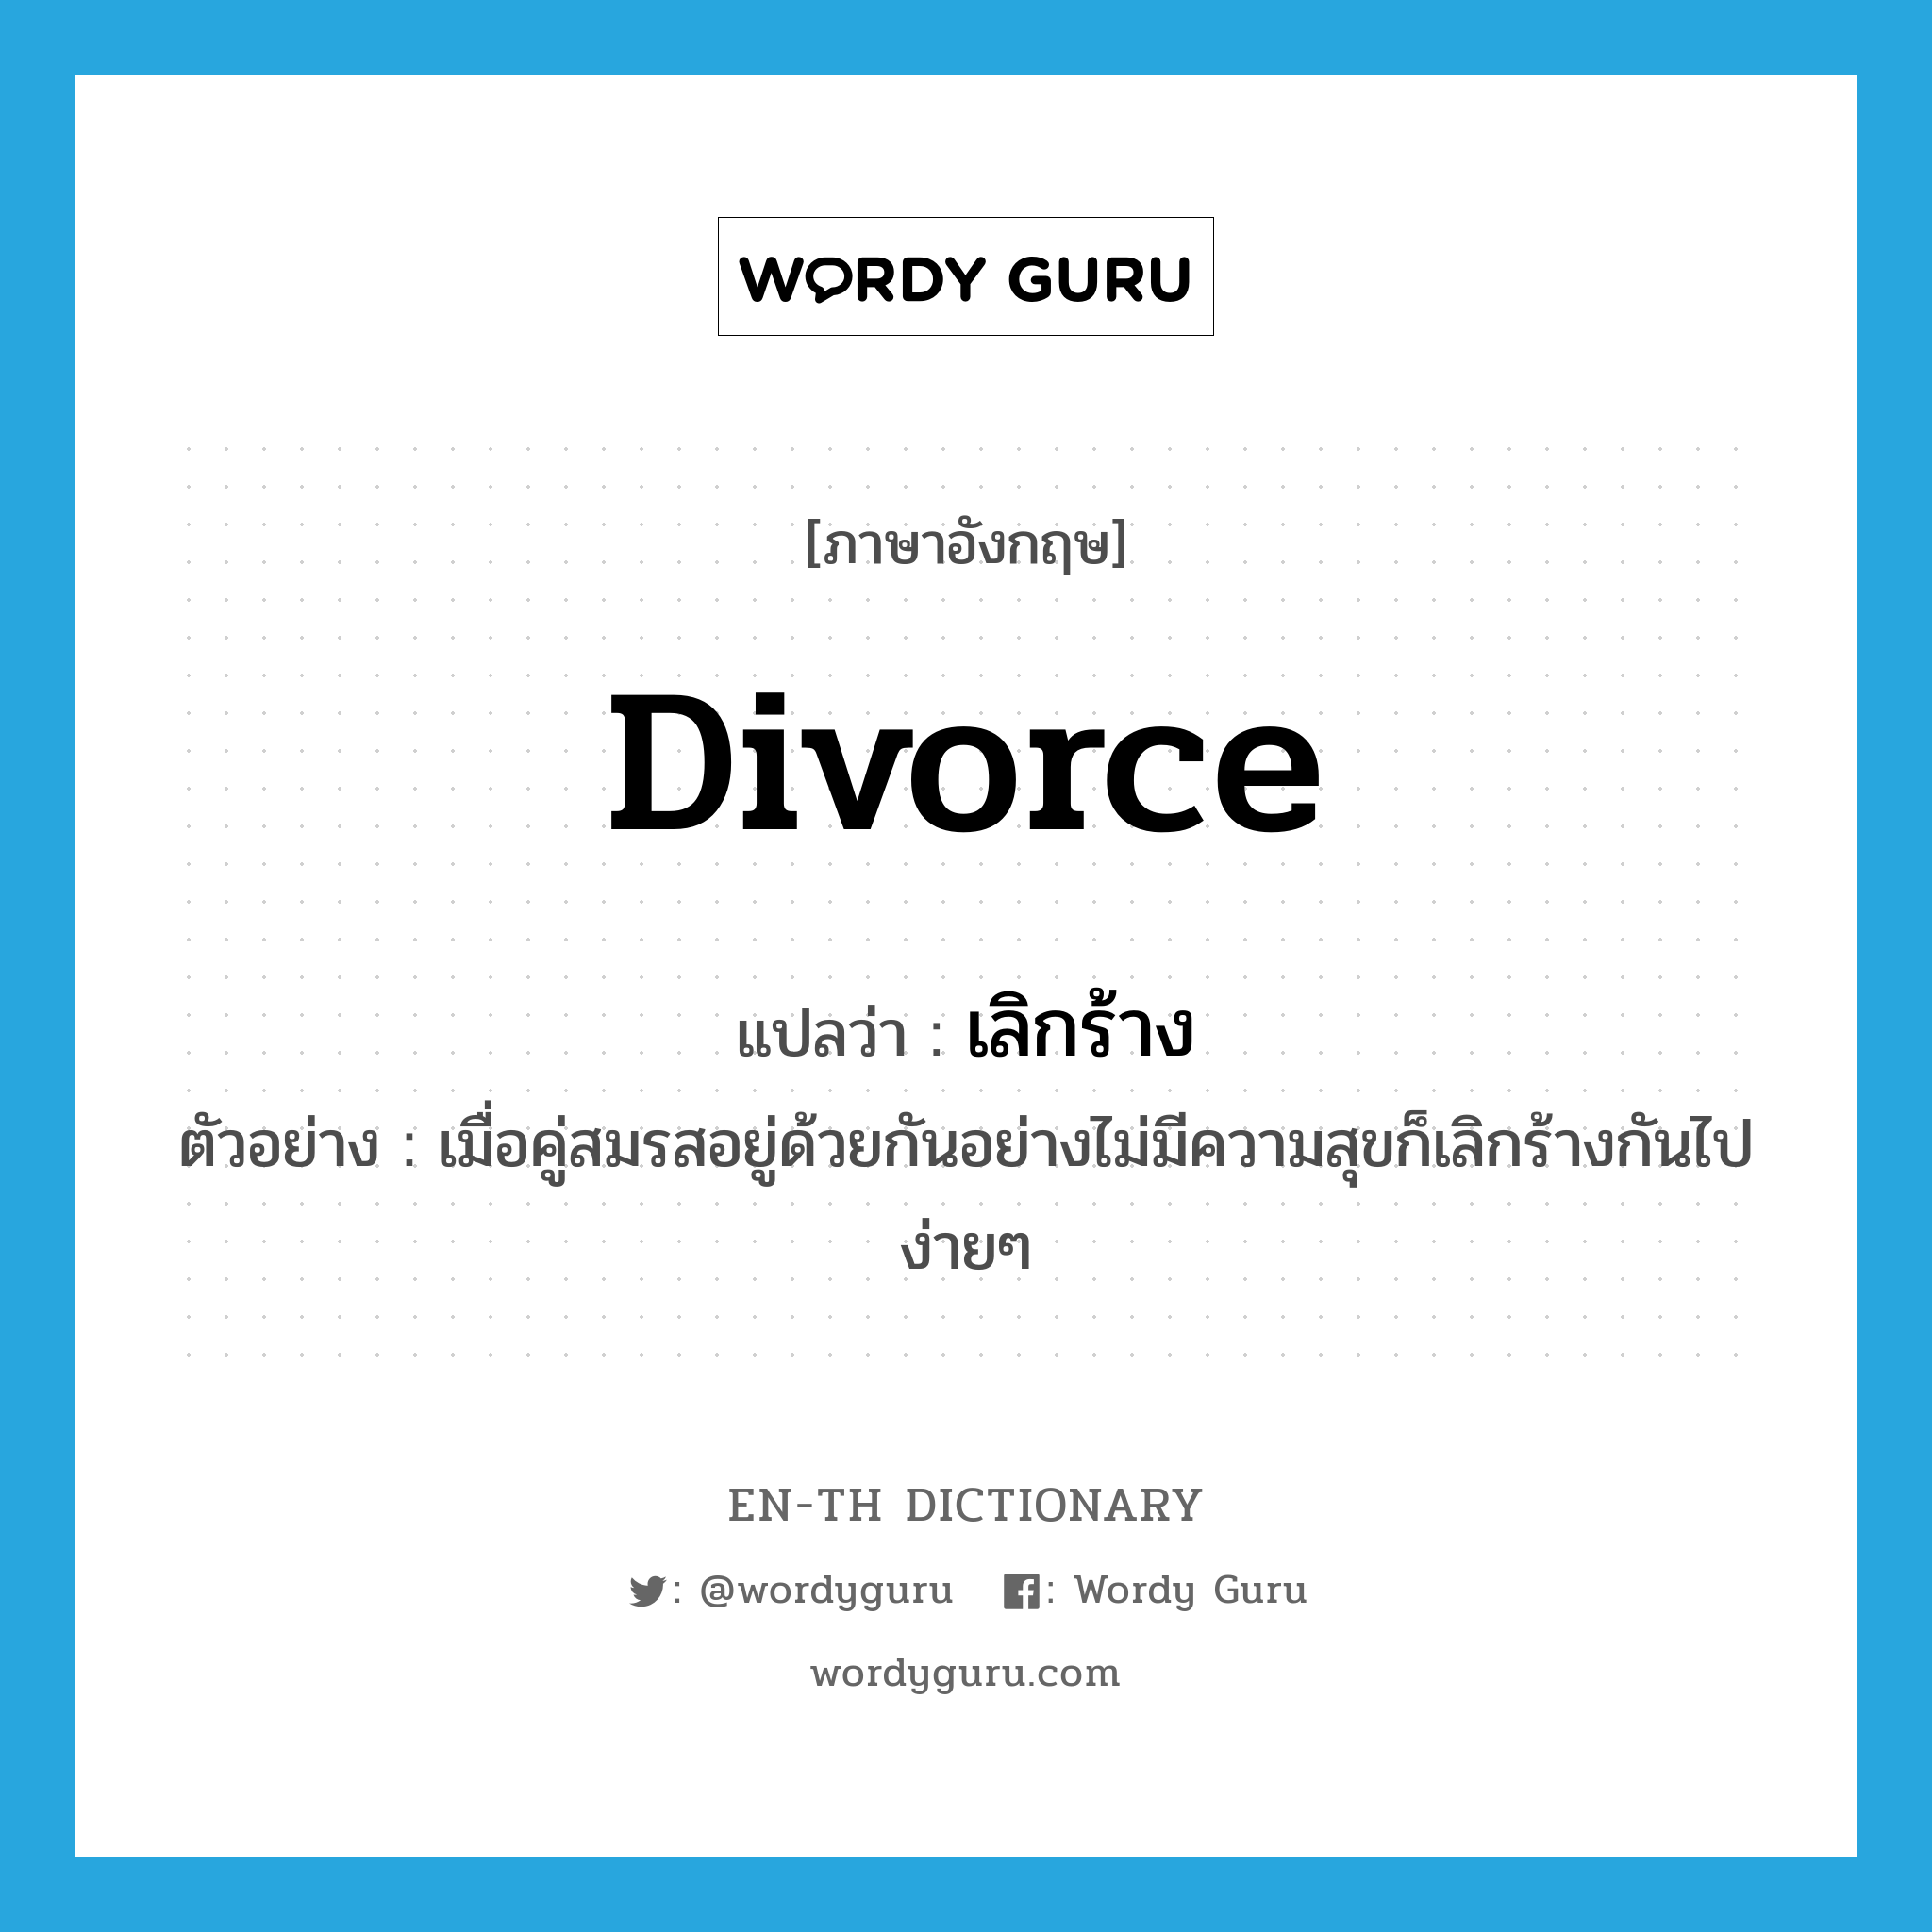 เลิกร้าง ภาษาอังกฤษ?, คำศัพท์ภาษาอังกฤษ เลิกร้าง แปลว่า divorce ประเภท V ตัวอย่าง เมื่อคู่สมรสอยู่ด้วยกันอย่างไม่มีความสุขก็เลิกร้างกันไปง่ายๆ หมวด V